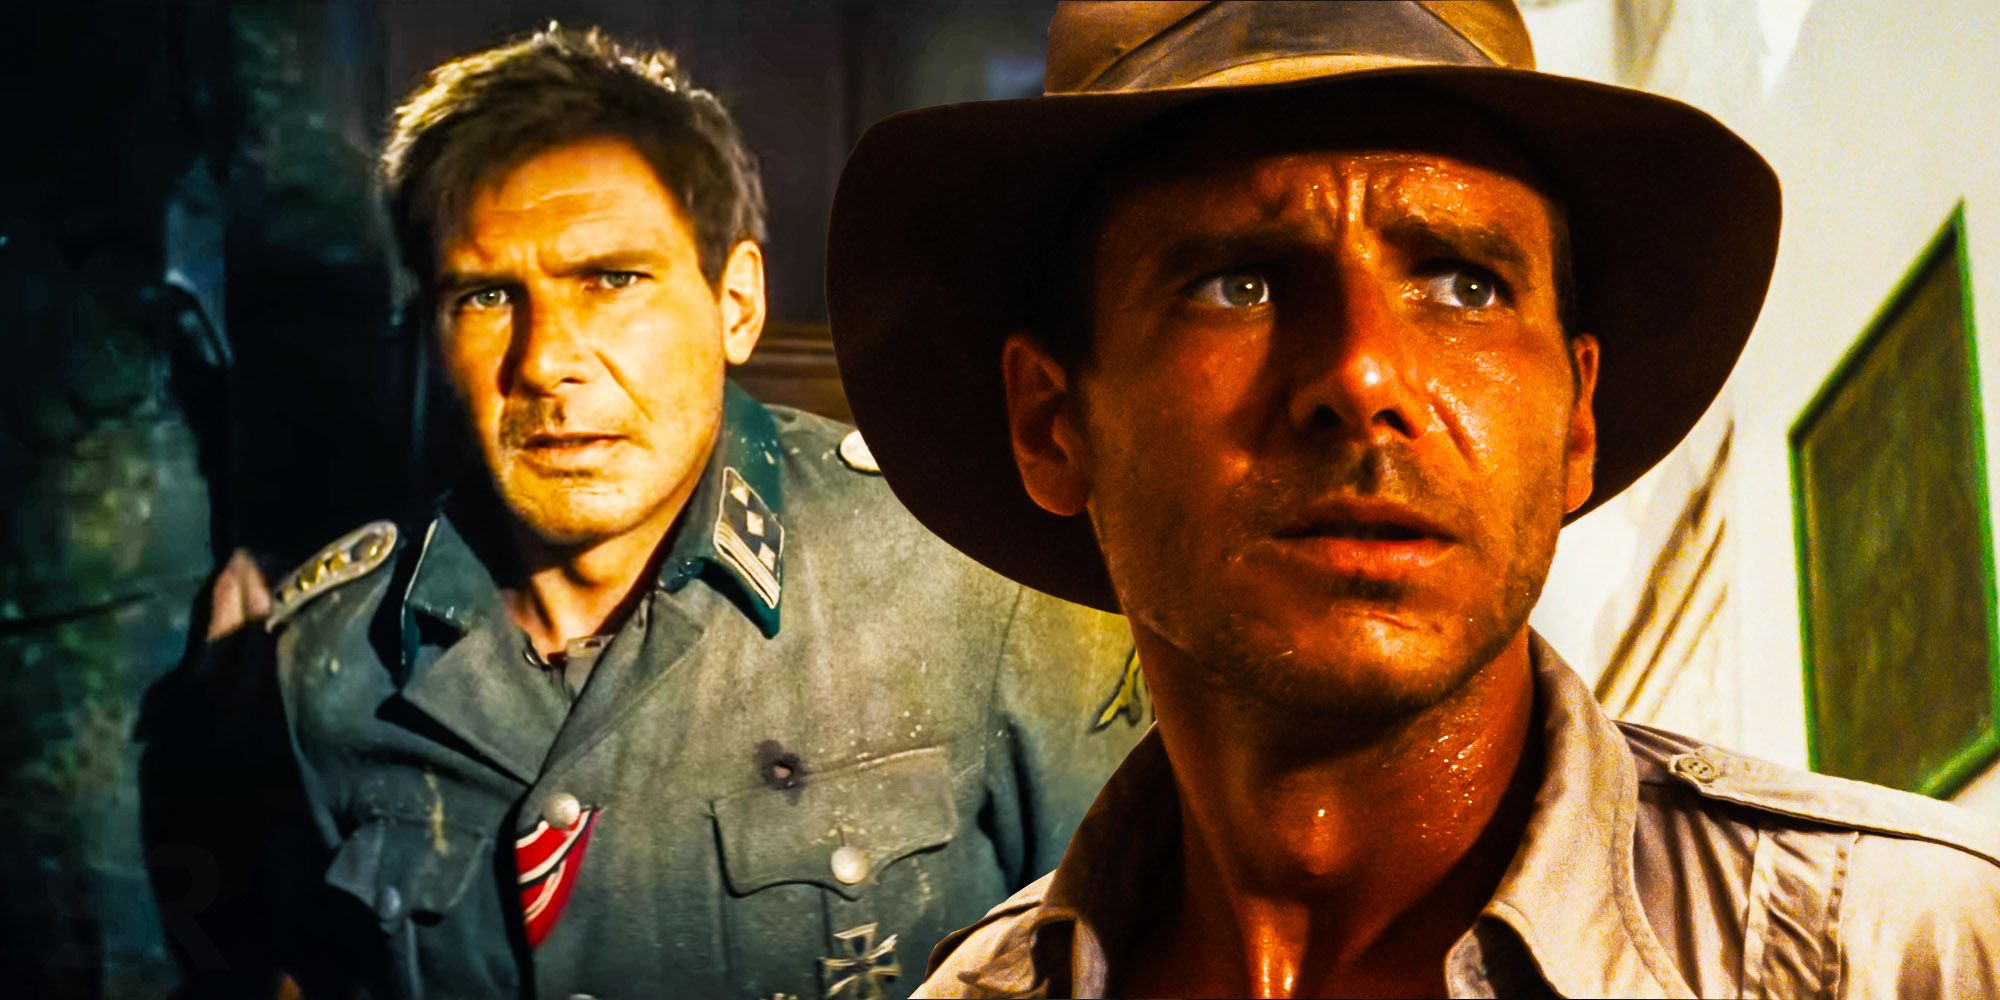 De-Aged Harrison Ford In Indiana Jones 5 Is Disney's Best Yet!